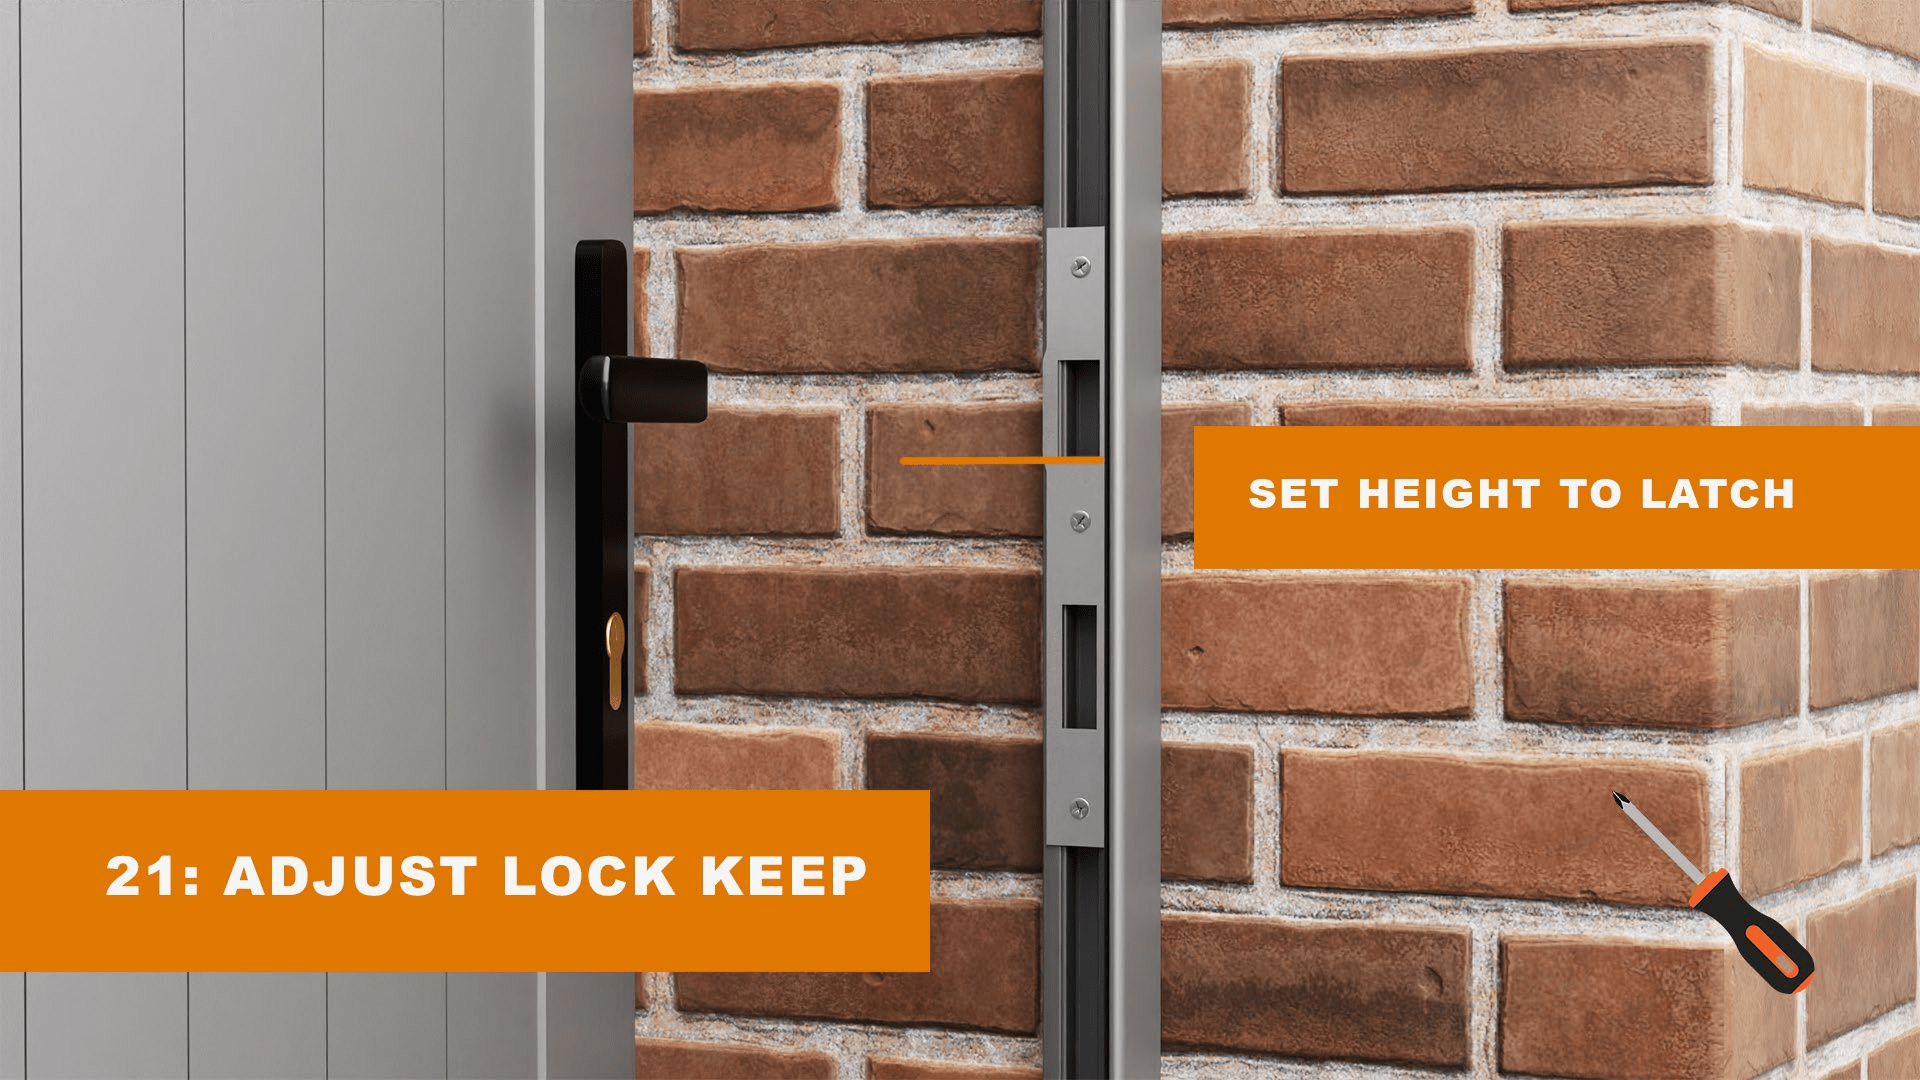 Adjust lock keep